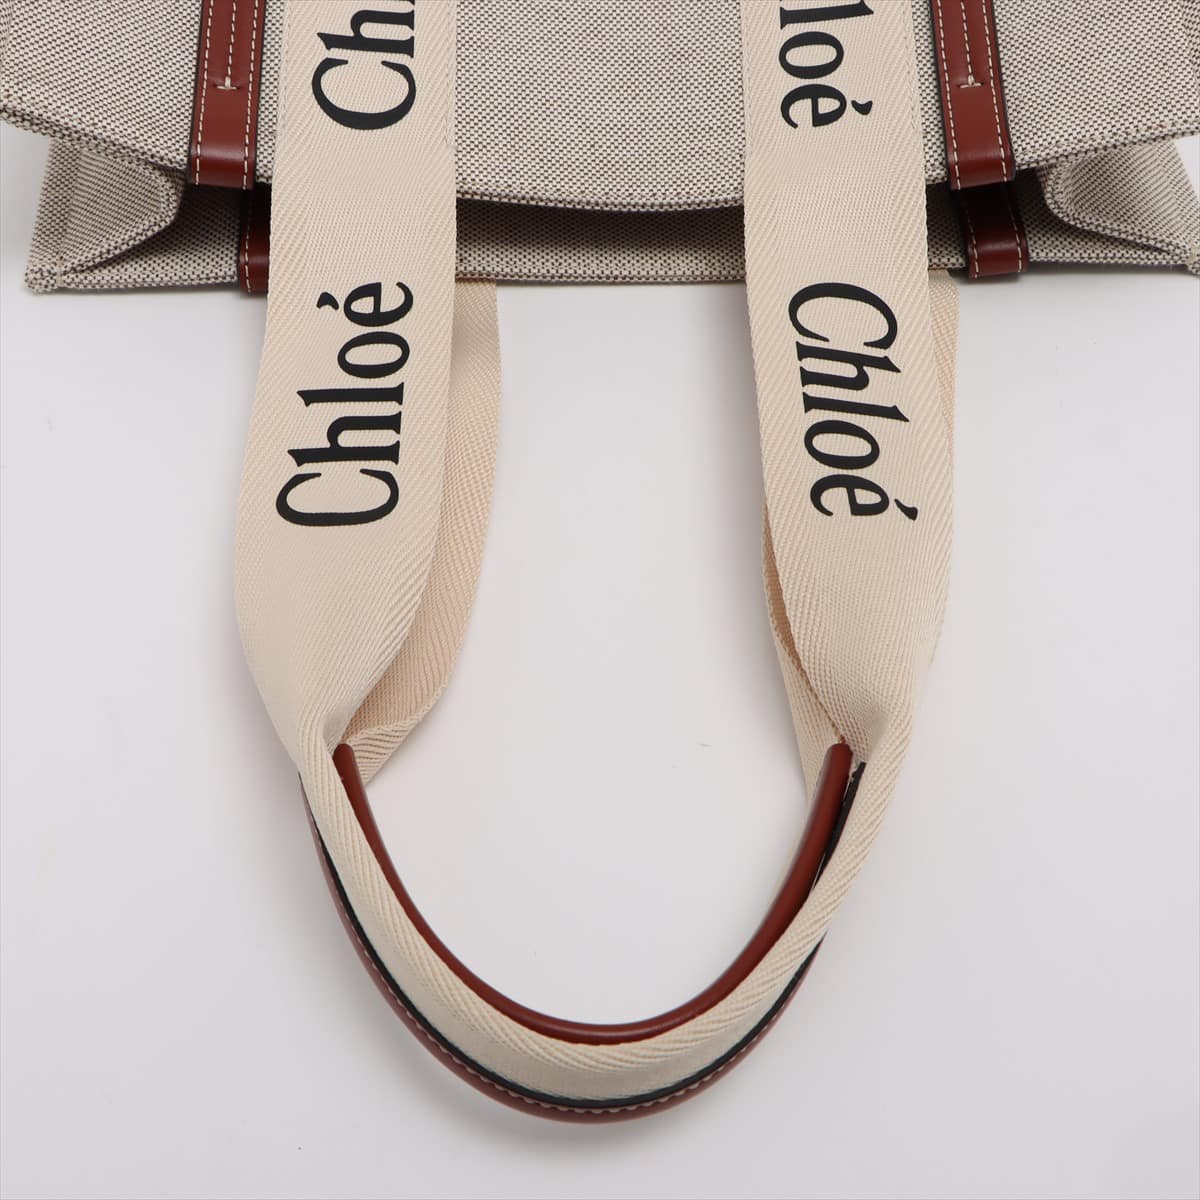 Chloe woody Medium Canvas & leather Tote bag Beige